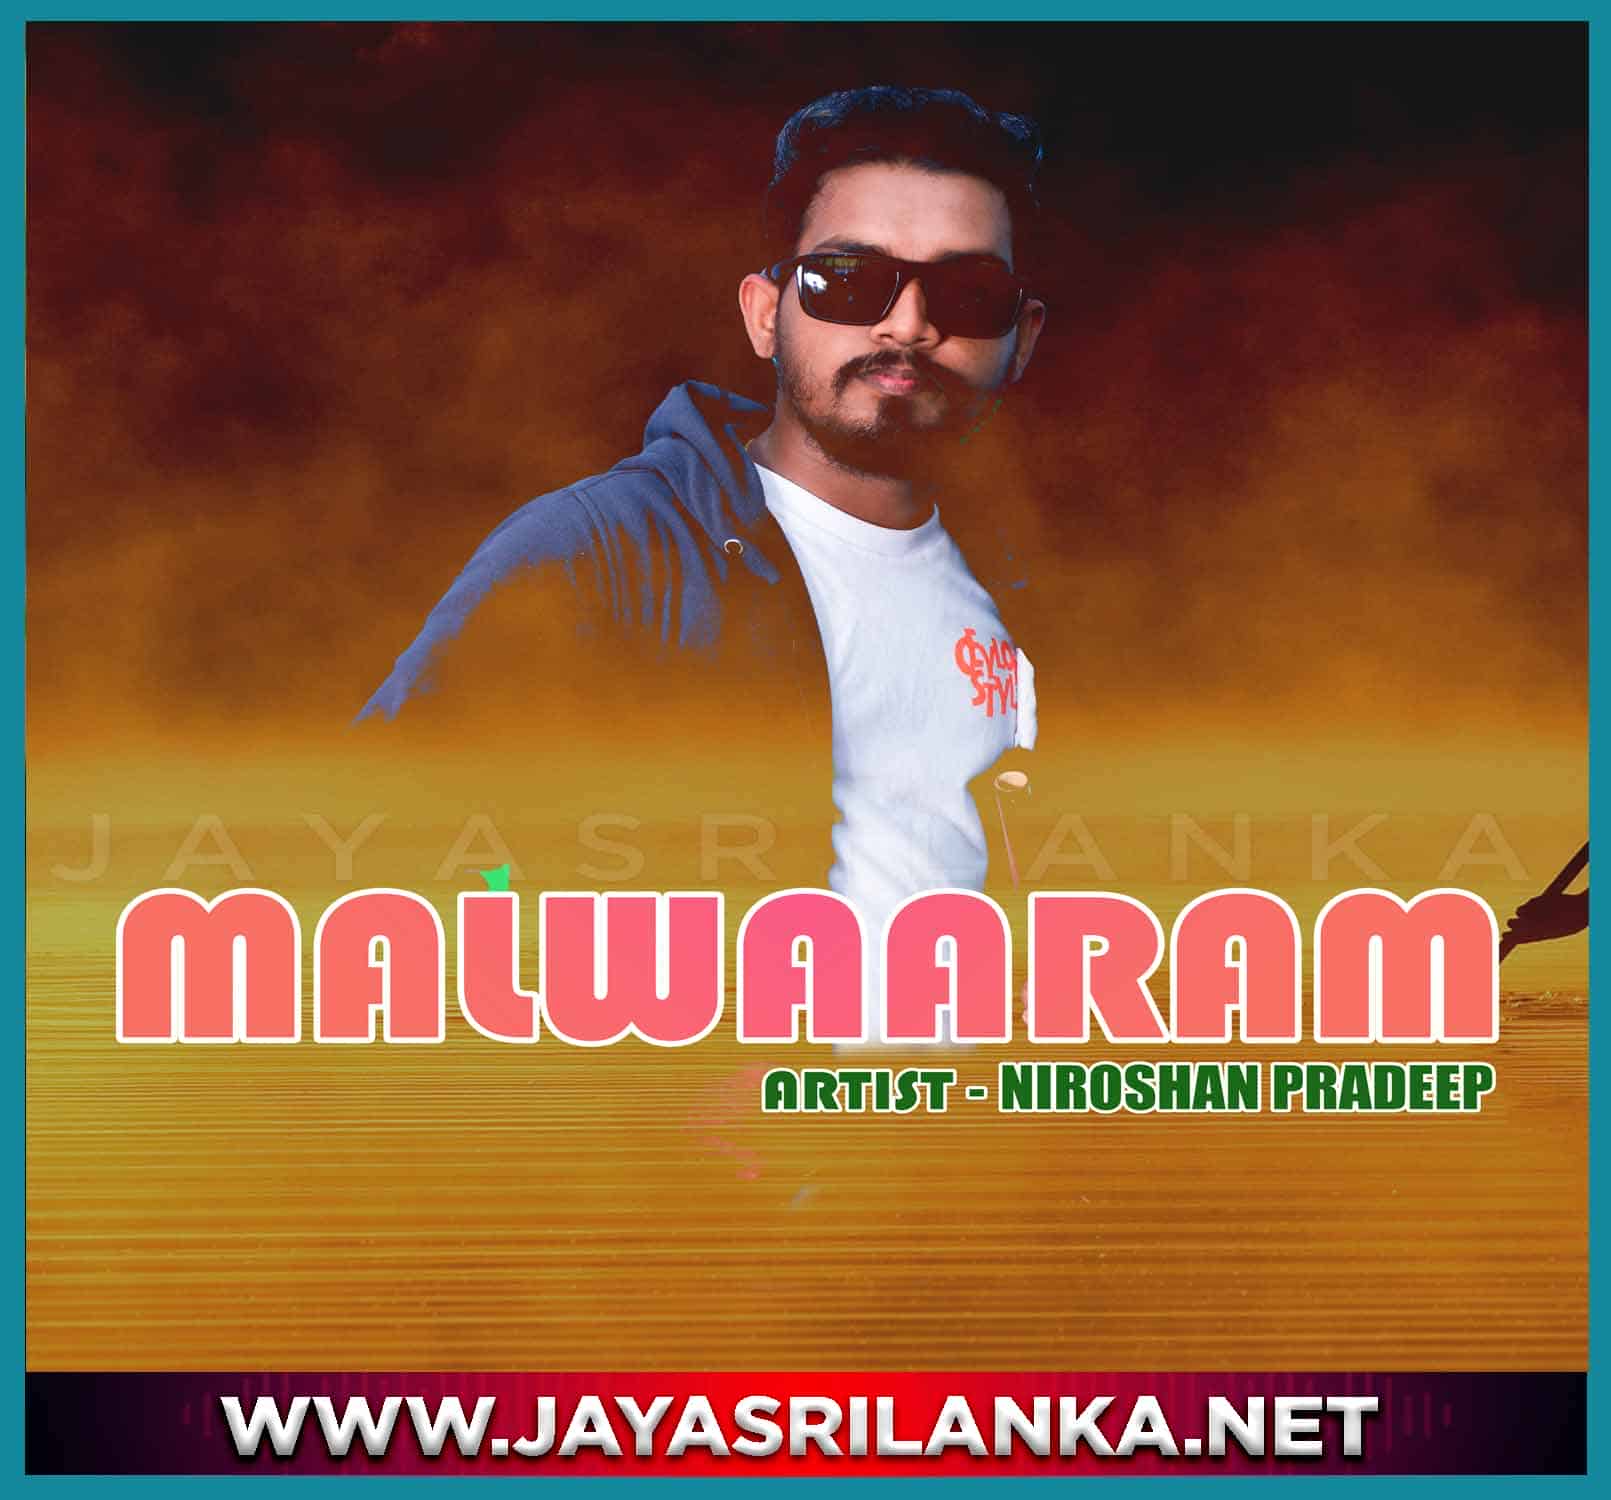 Malwaram